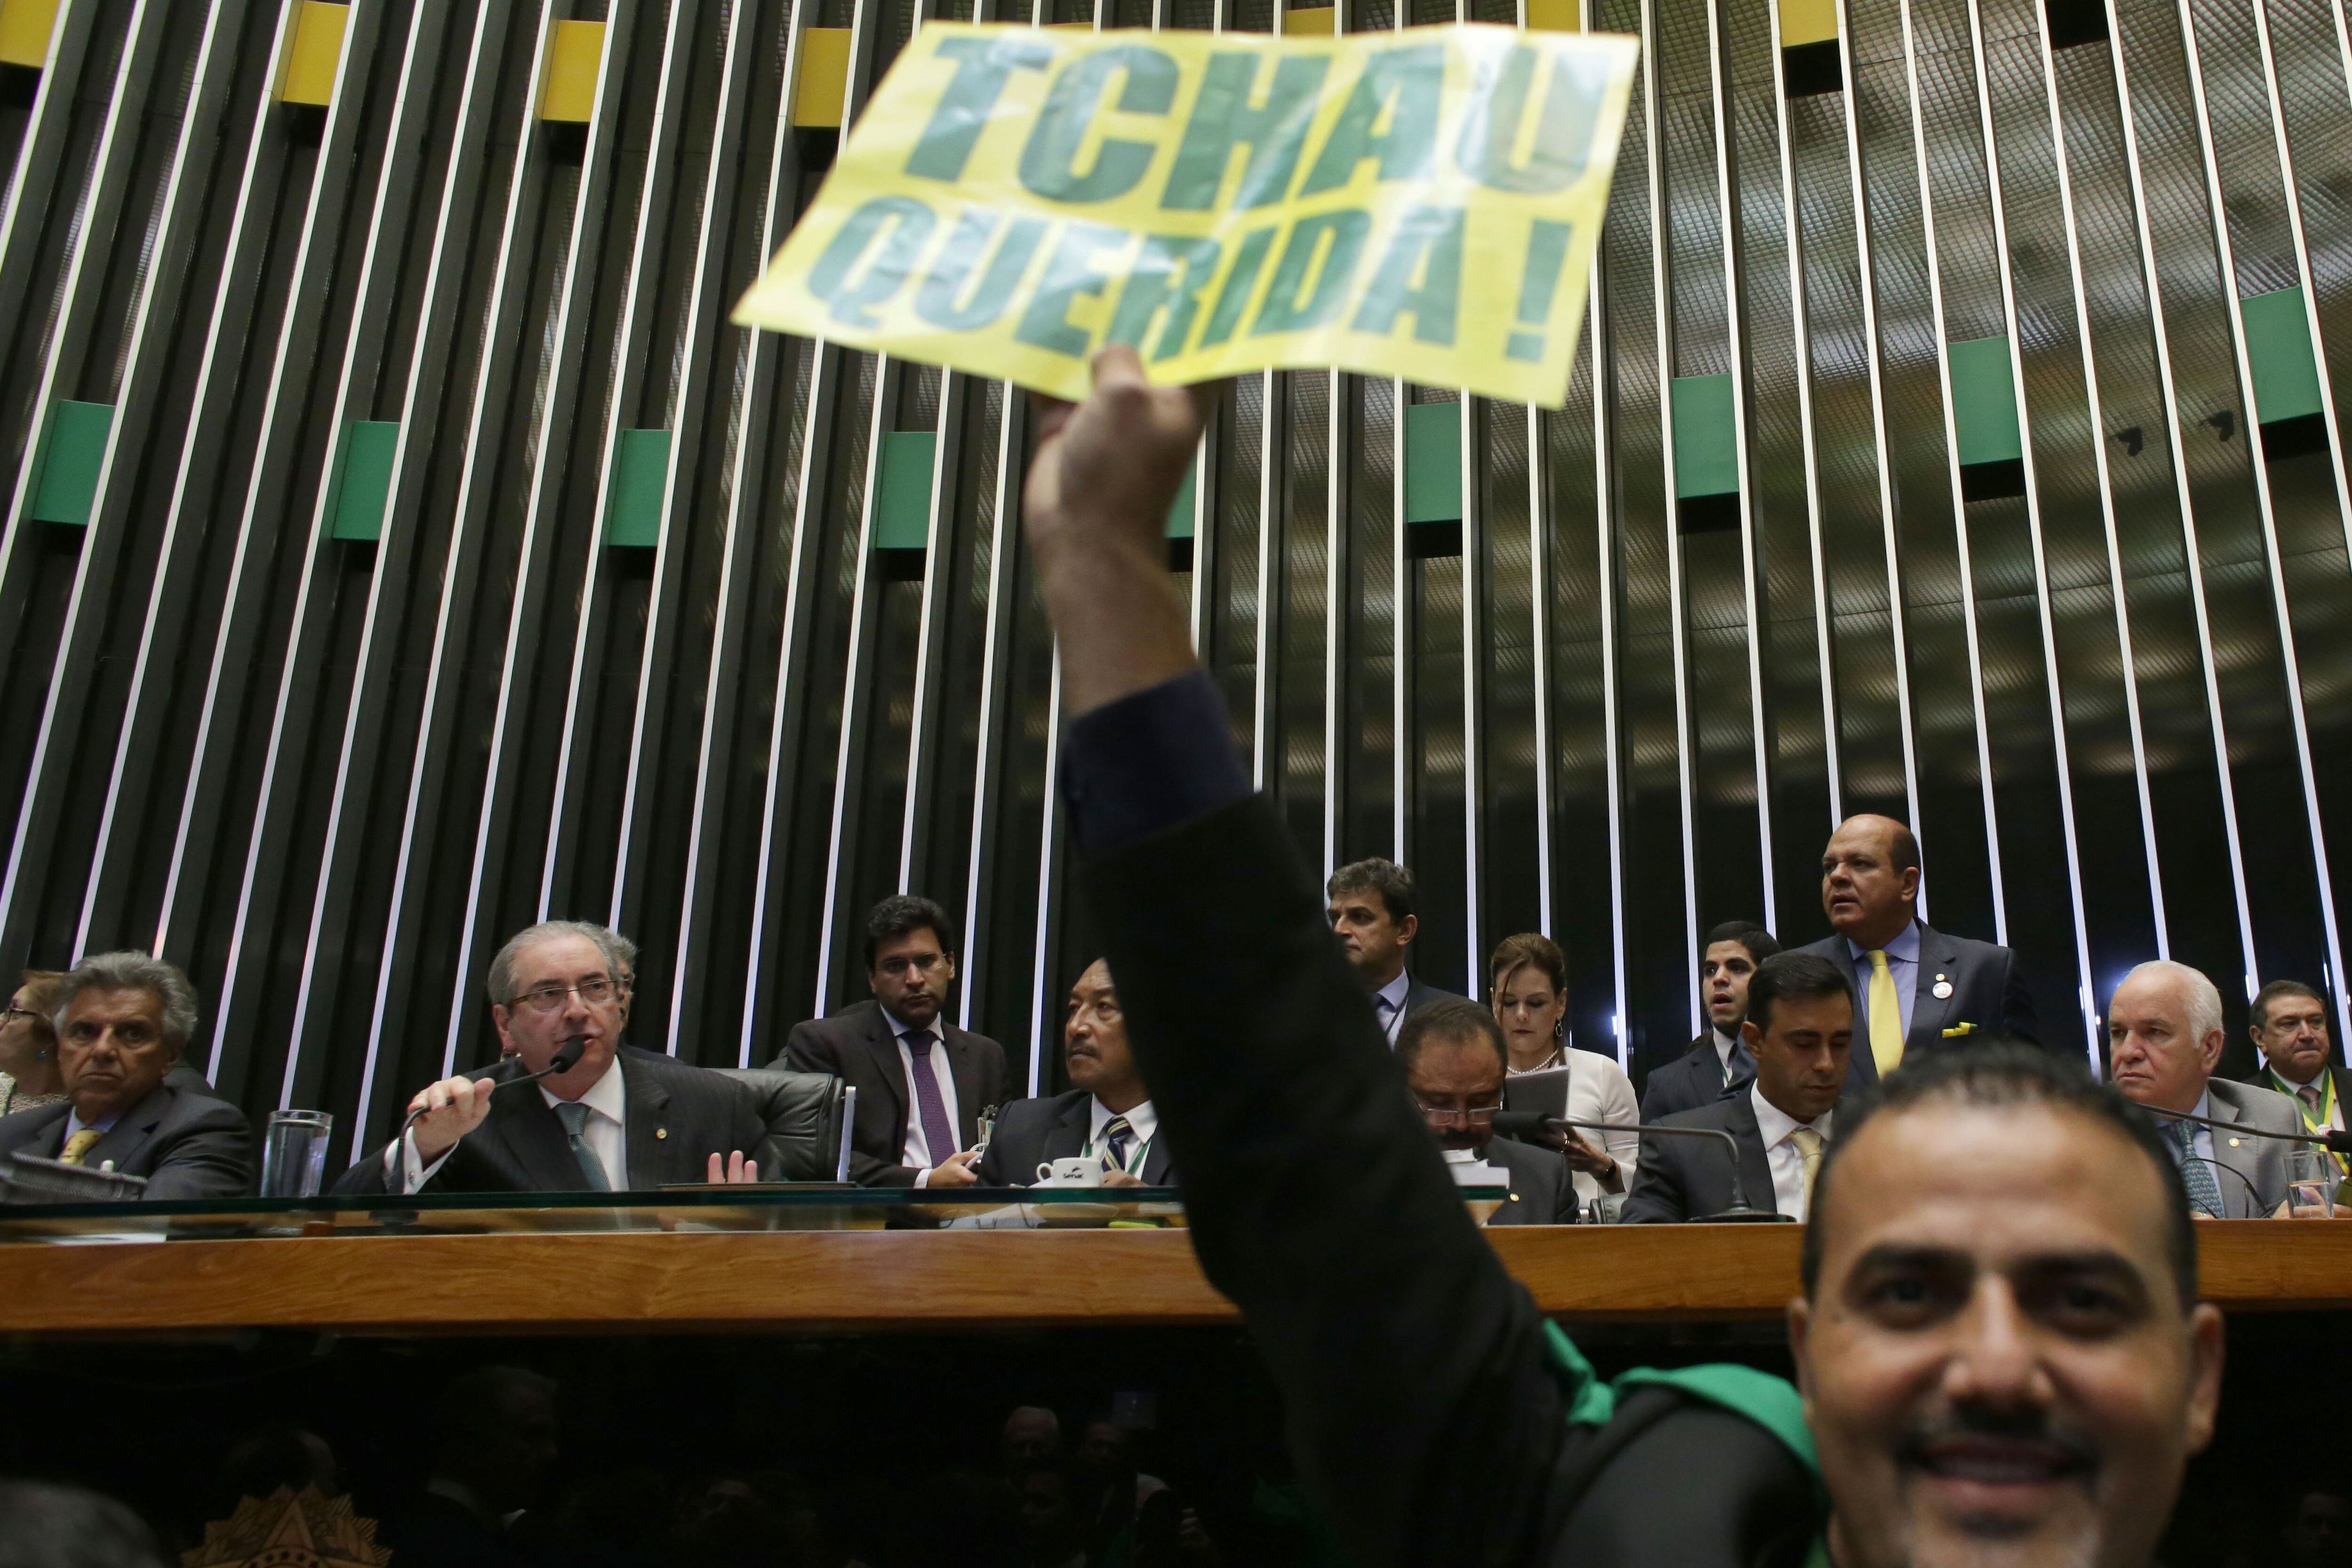 Eduardo Cunha (a la izquierda, con el micrófono), en una sesión de la cámara en la que se discutía la destitución de Rousseff, en abril de 2016.